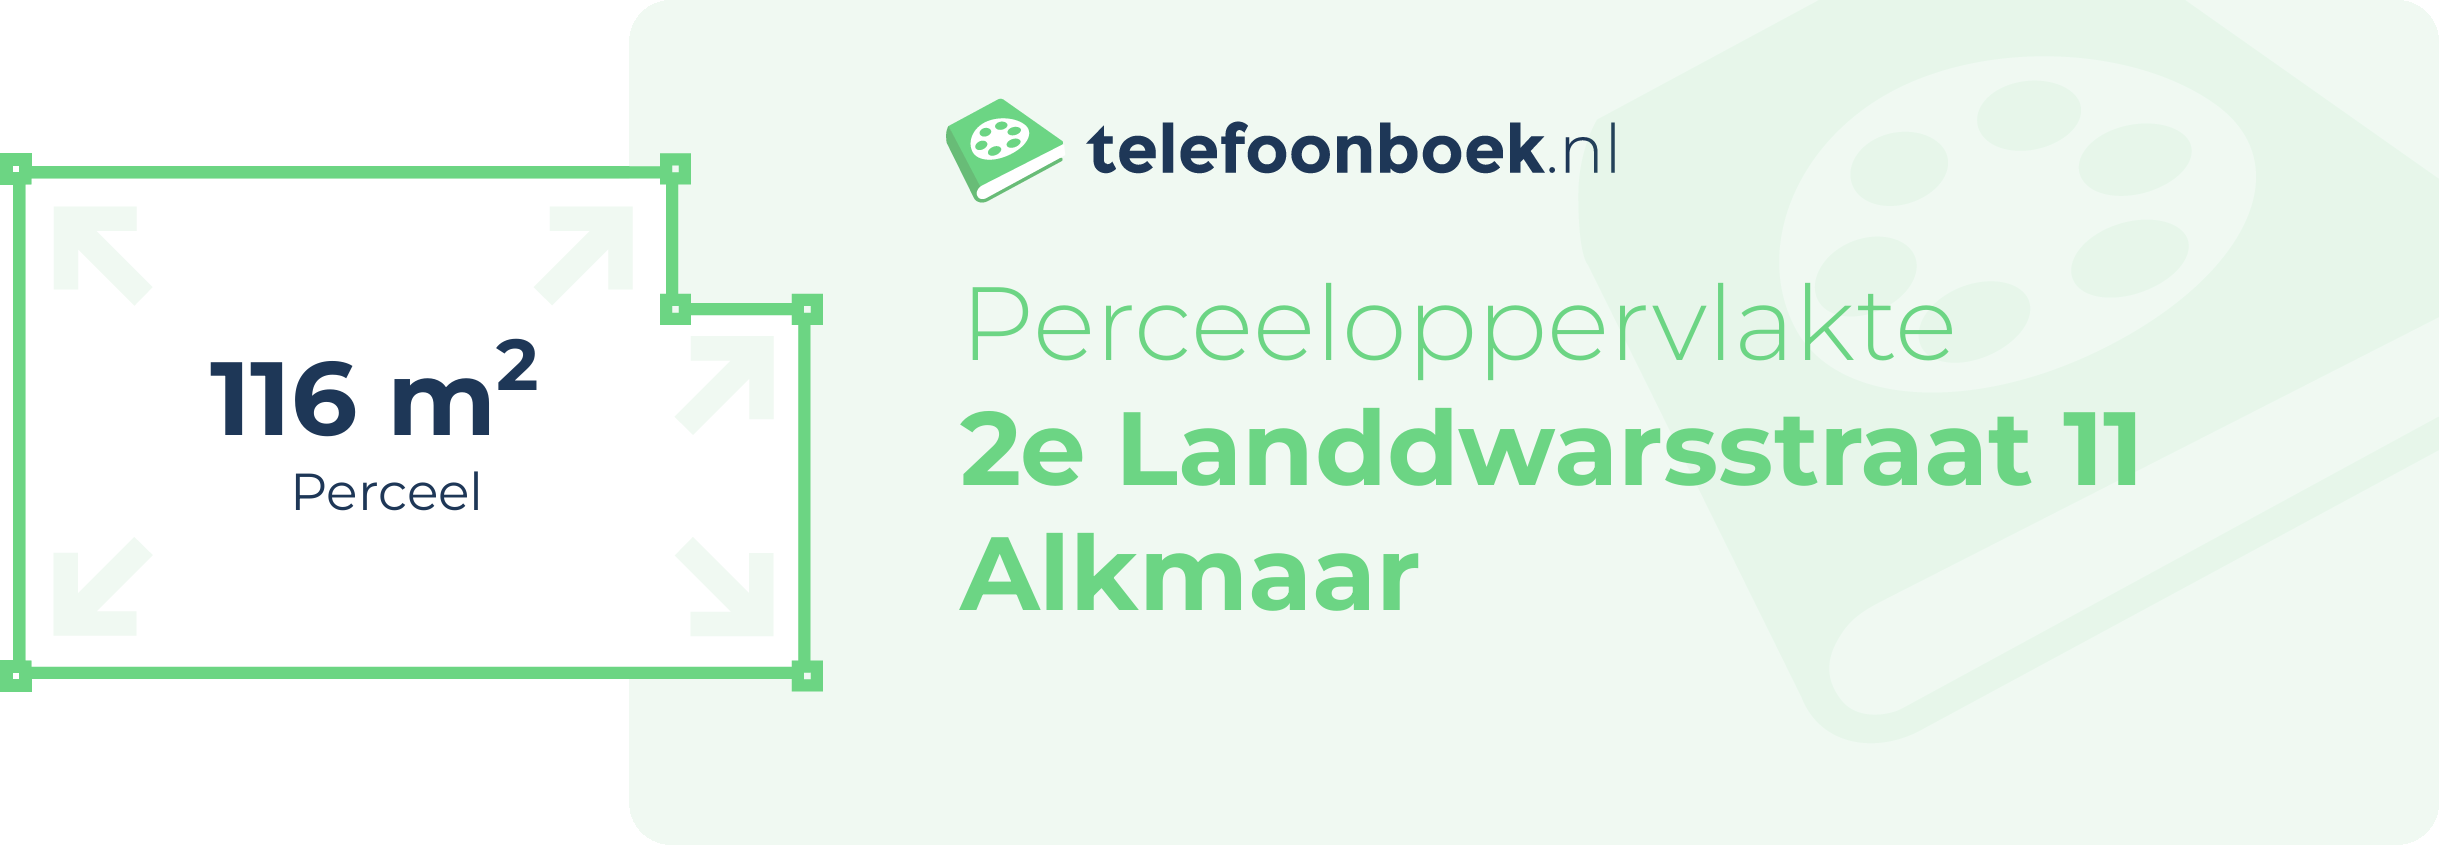 Perceeloppervlakte 2e Landdwarsstraat 11 Alkmaar